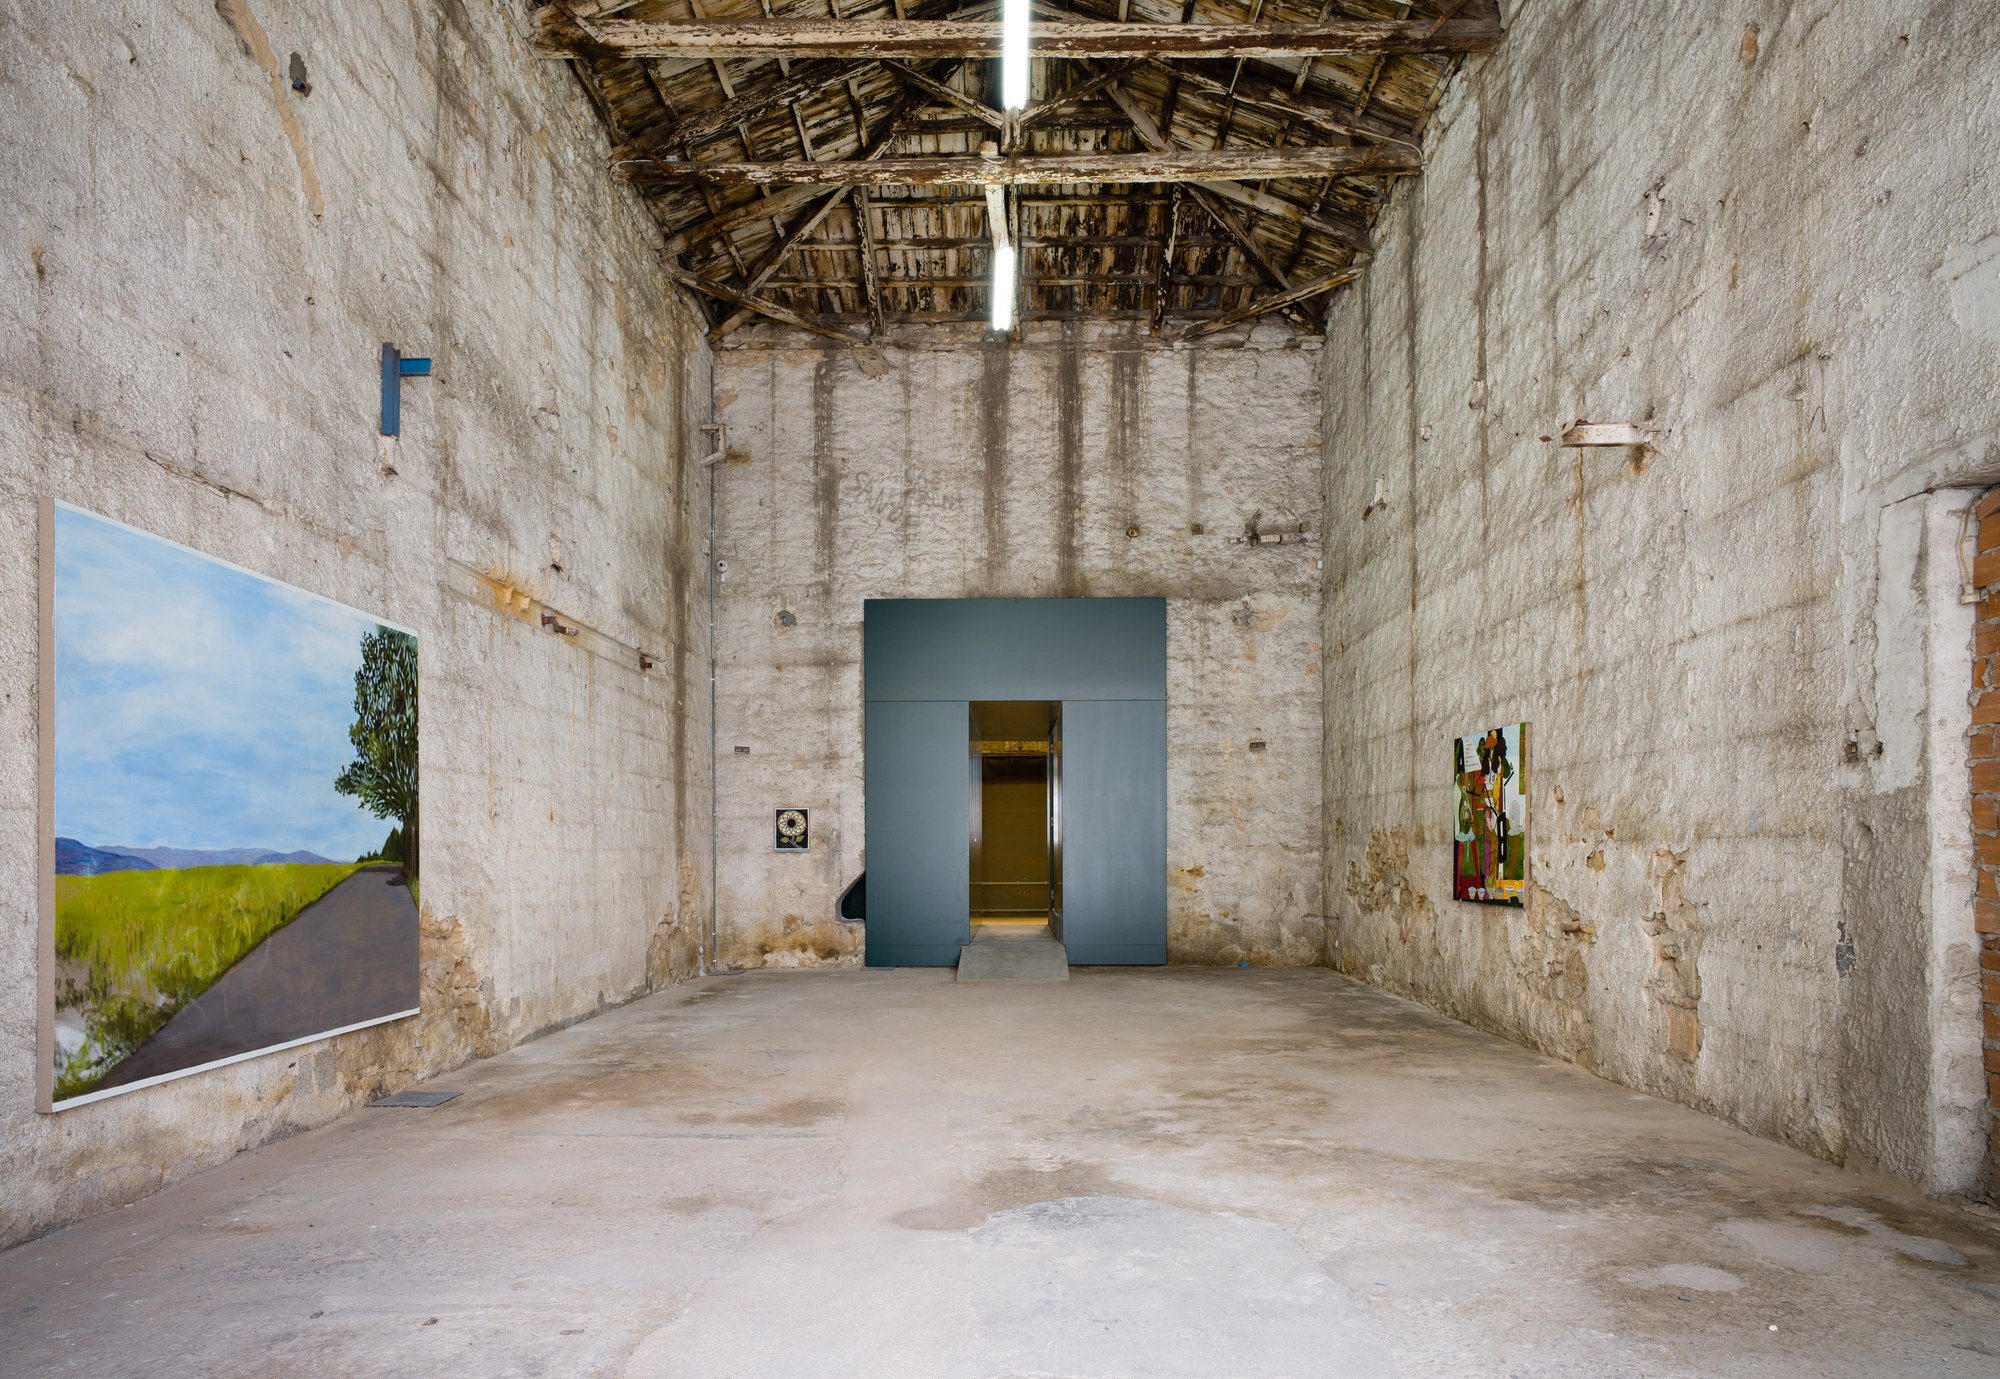 Installation view, Leidy Churchman, Snowlion, Rodeo, Piraeus, 2018